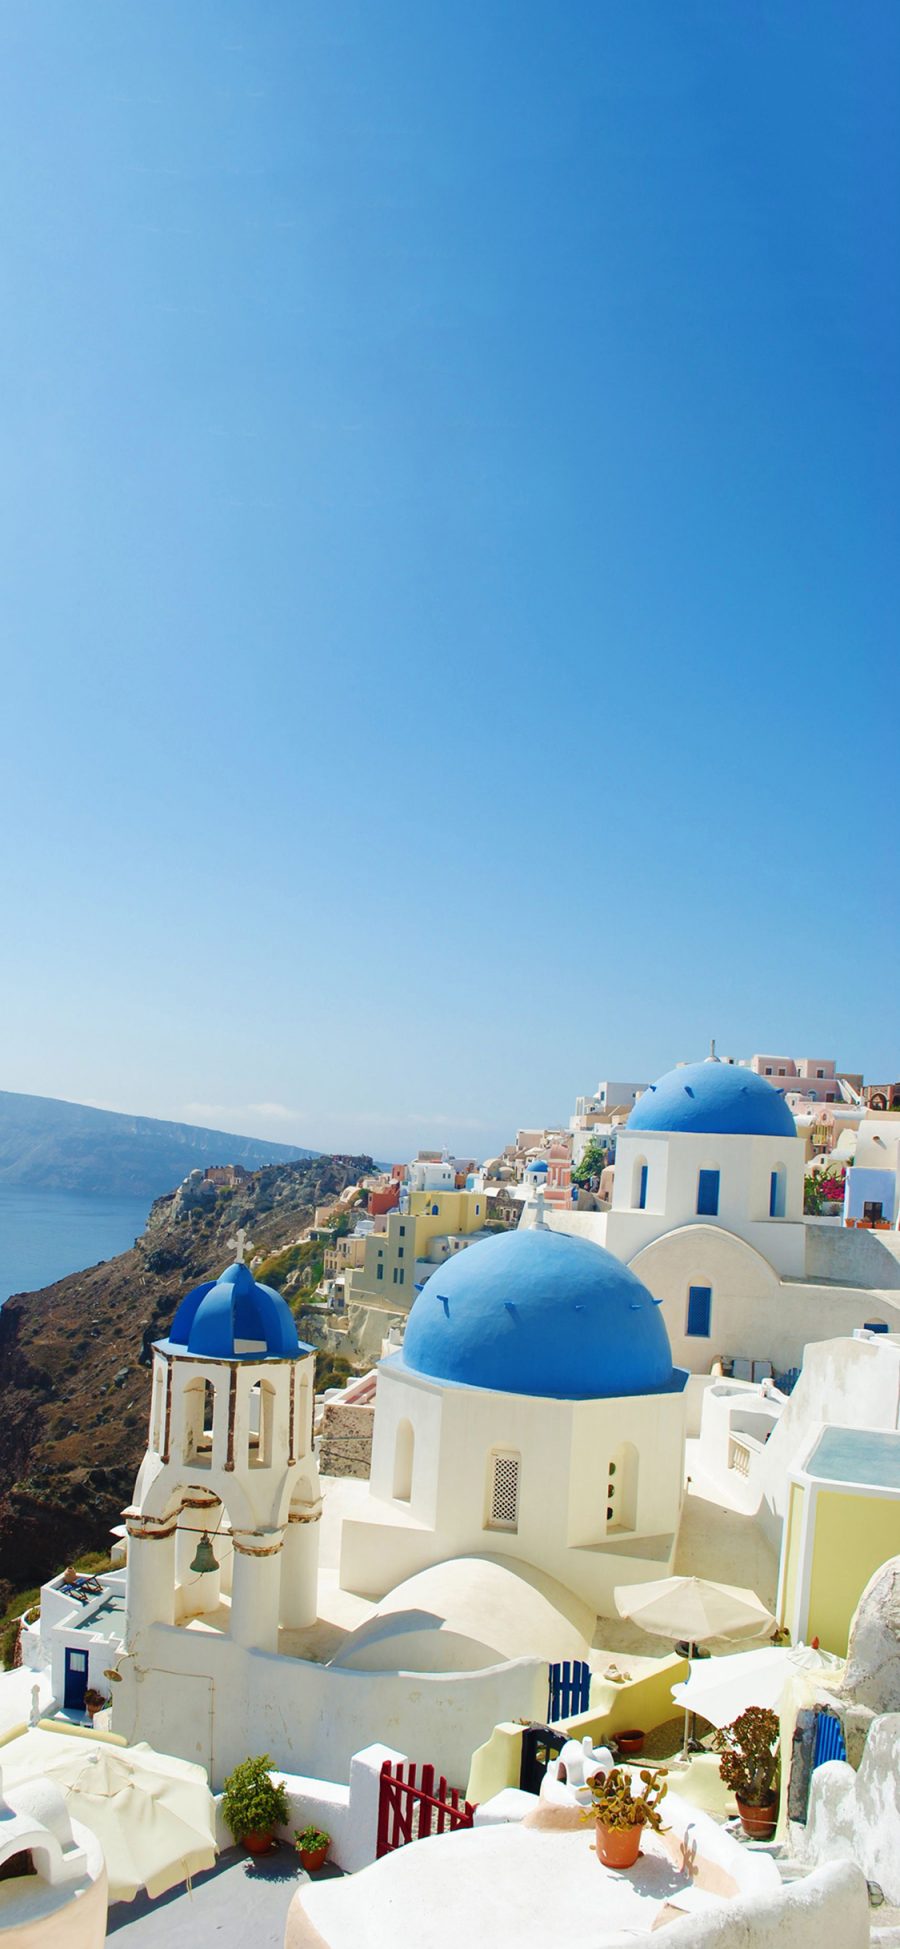 [2436×1125]希腊 圣托里尼岛 蓝白 天空 建筑 旅游 浪漫 爱情海 苹果手机壁纸图片